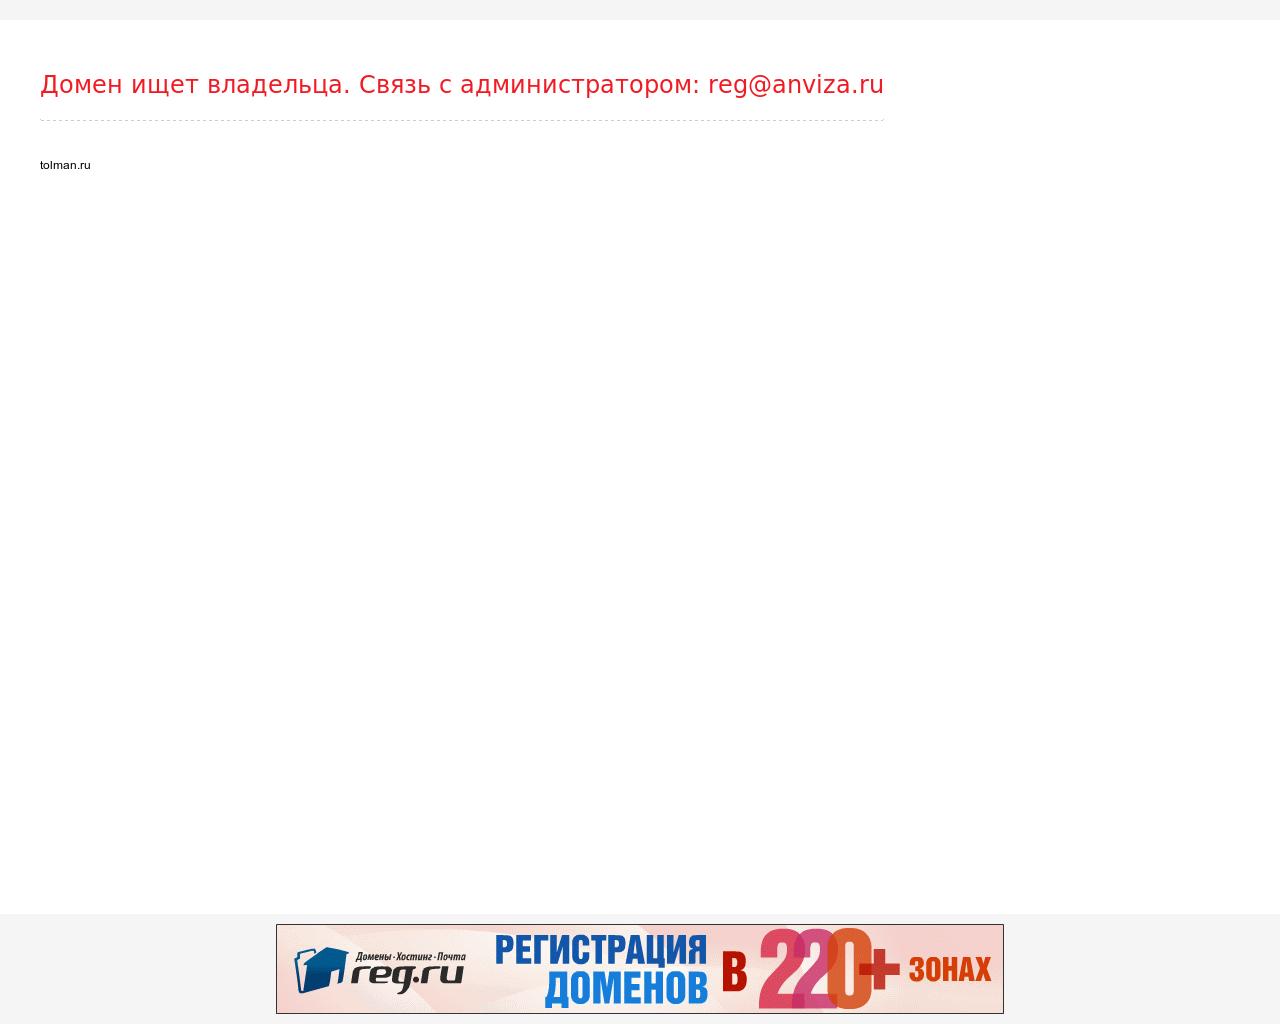 Изображение сайта tolman.ru в разрешении 1280x1024